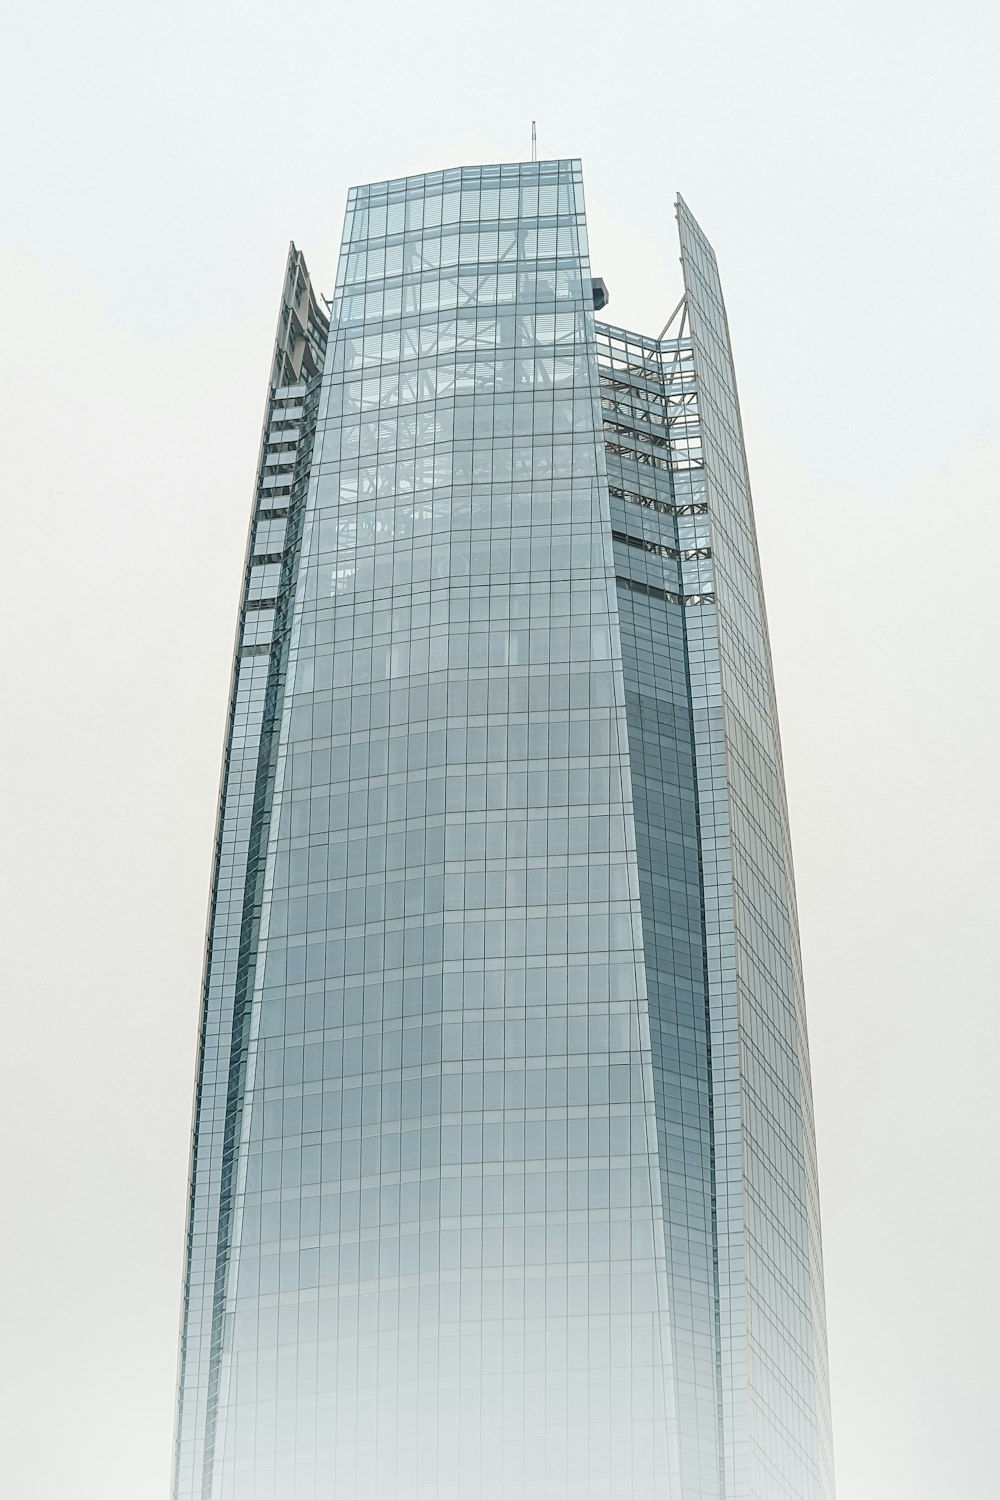 Ein sehr hohes Gebäude mit einer Uhr an der Seite